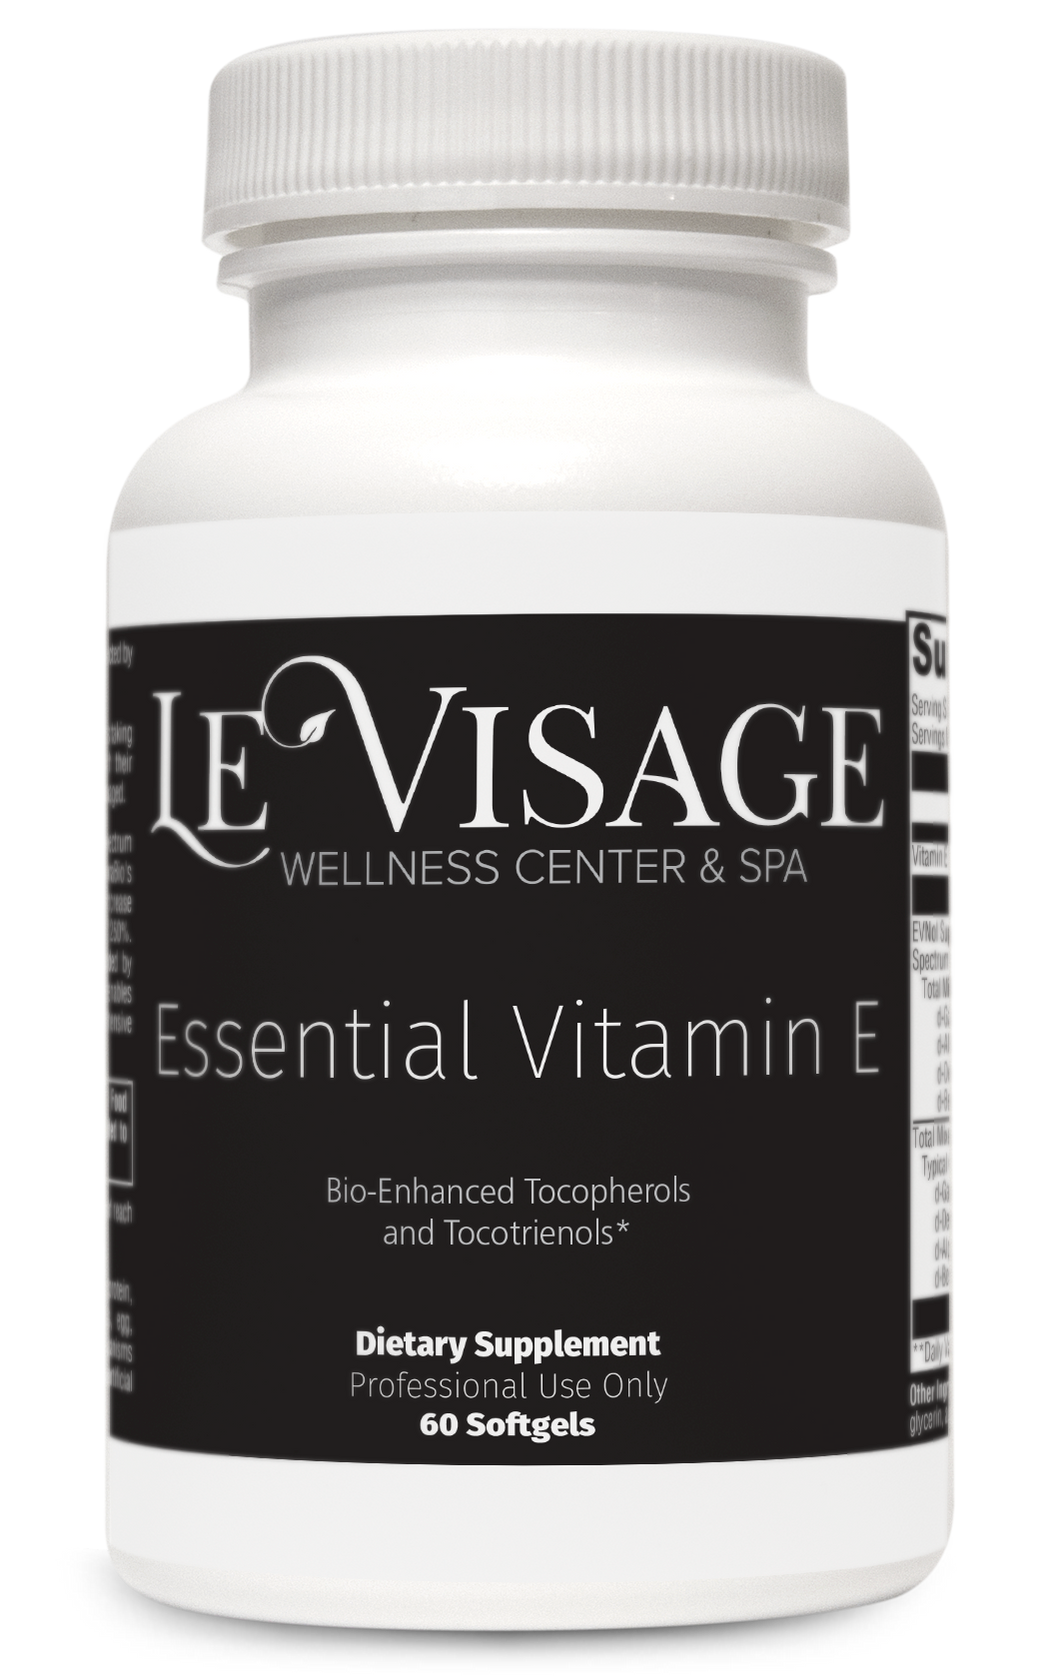 Essential Vitamin E